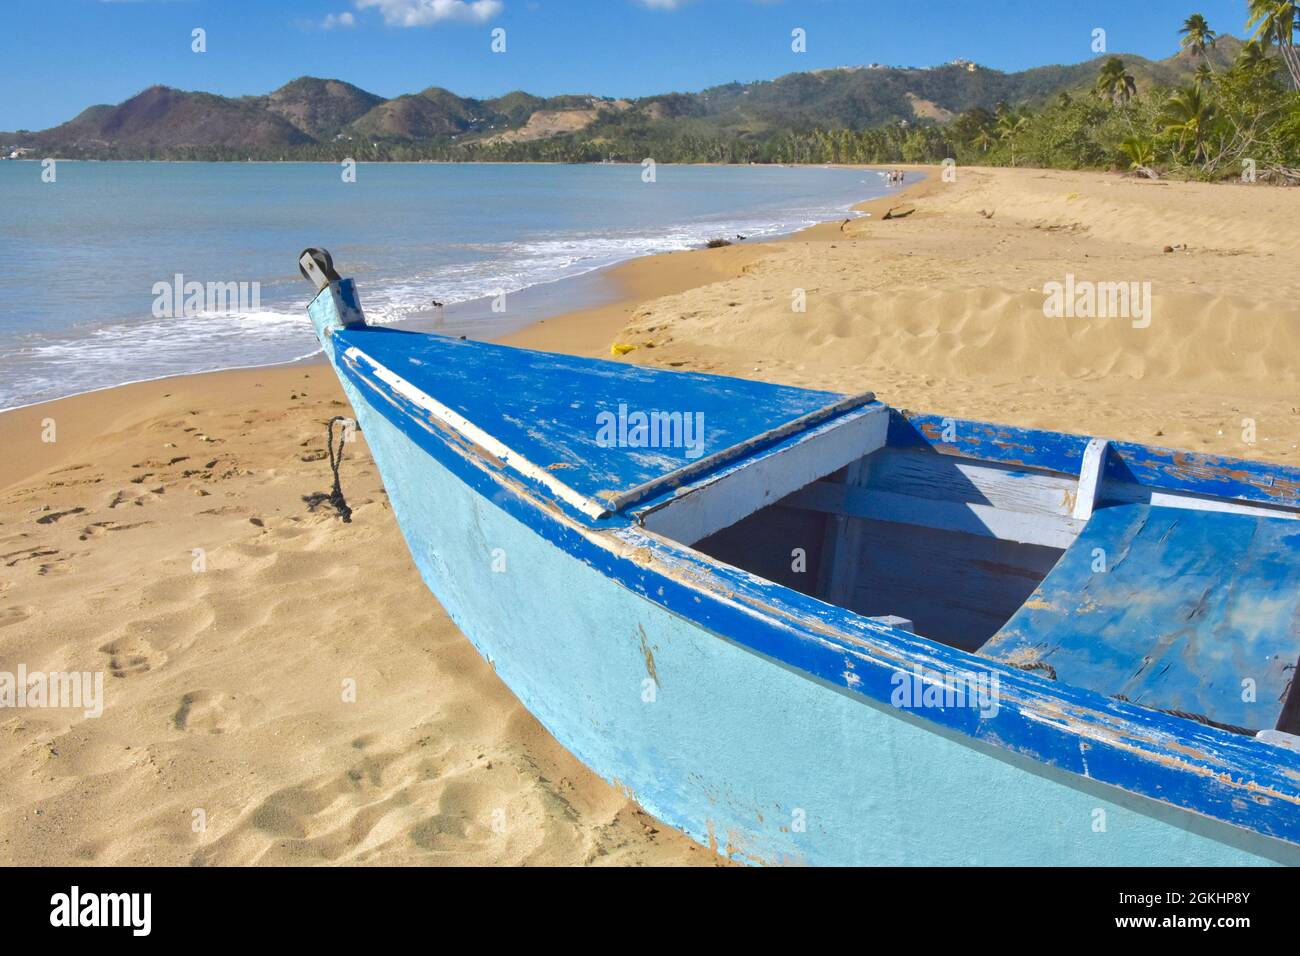 Tradicional barco de pesca caribeño en una playa de arena con colinas en la distancia. Anasco, Puerto Rico, Estados Unidos. Espacio de copia. Foto de stock